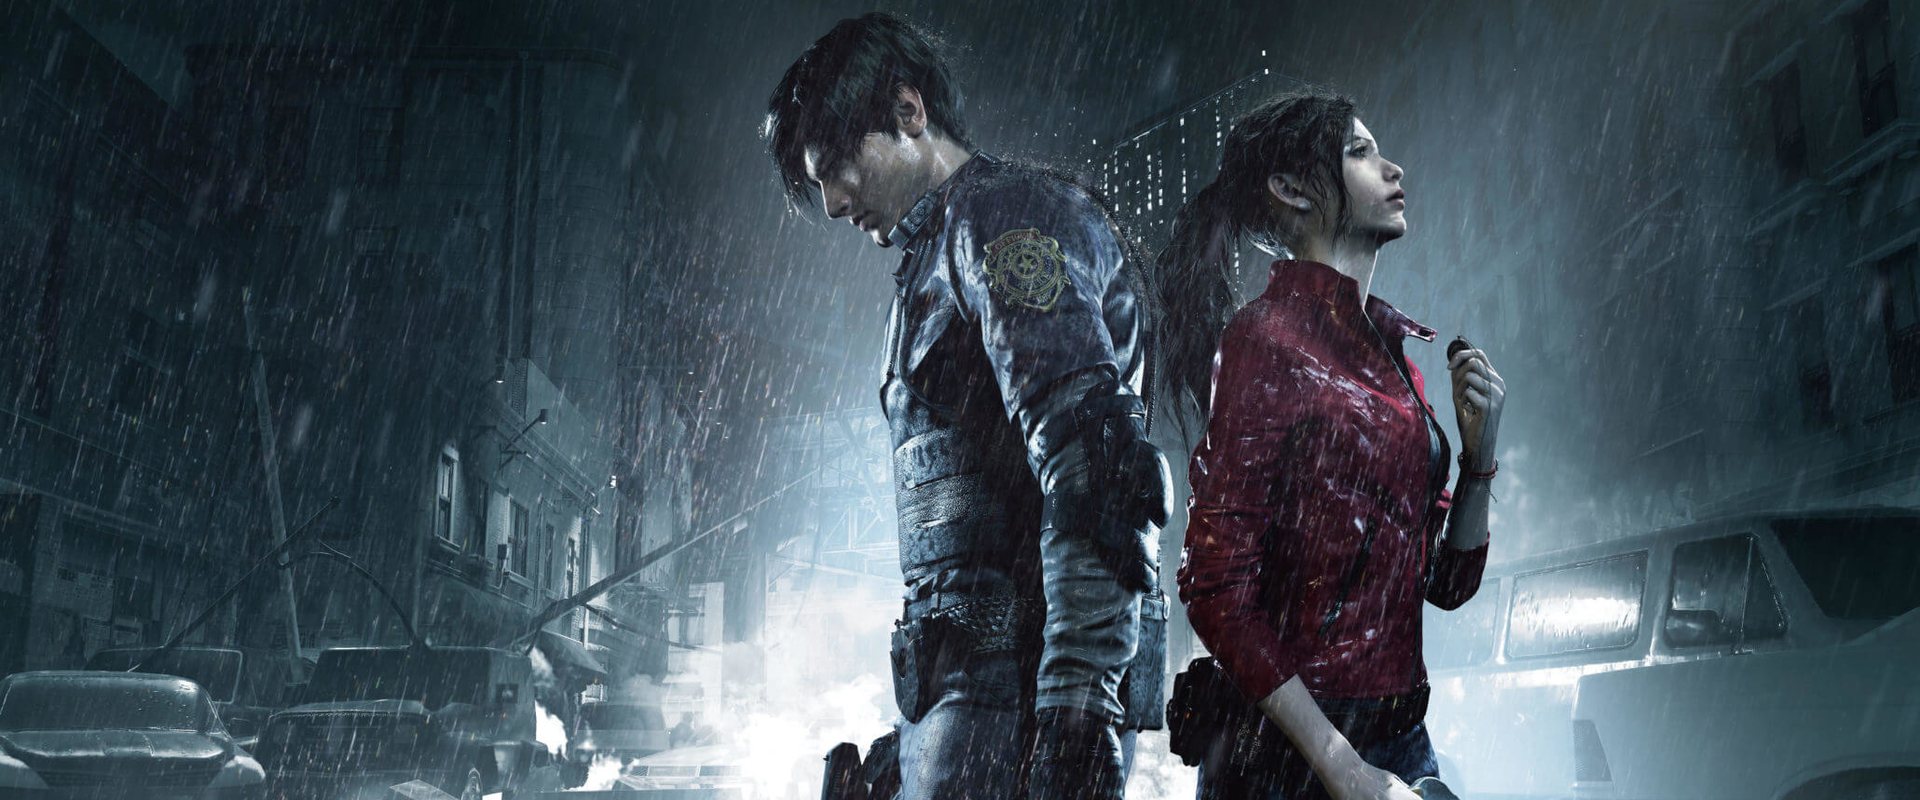 5 tipp, amitől jobban fog menni a Resident Evil 2 Remake